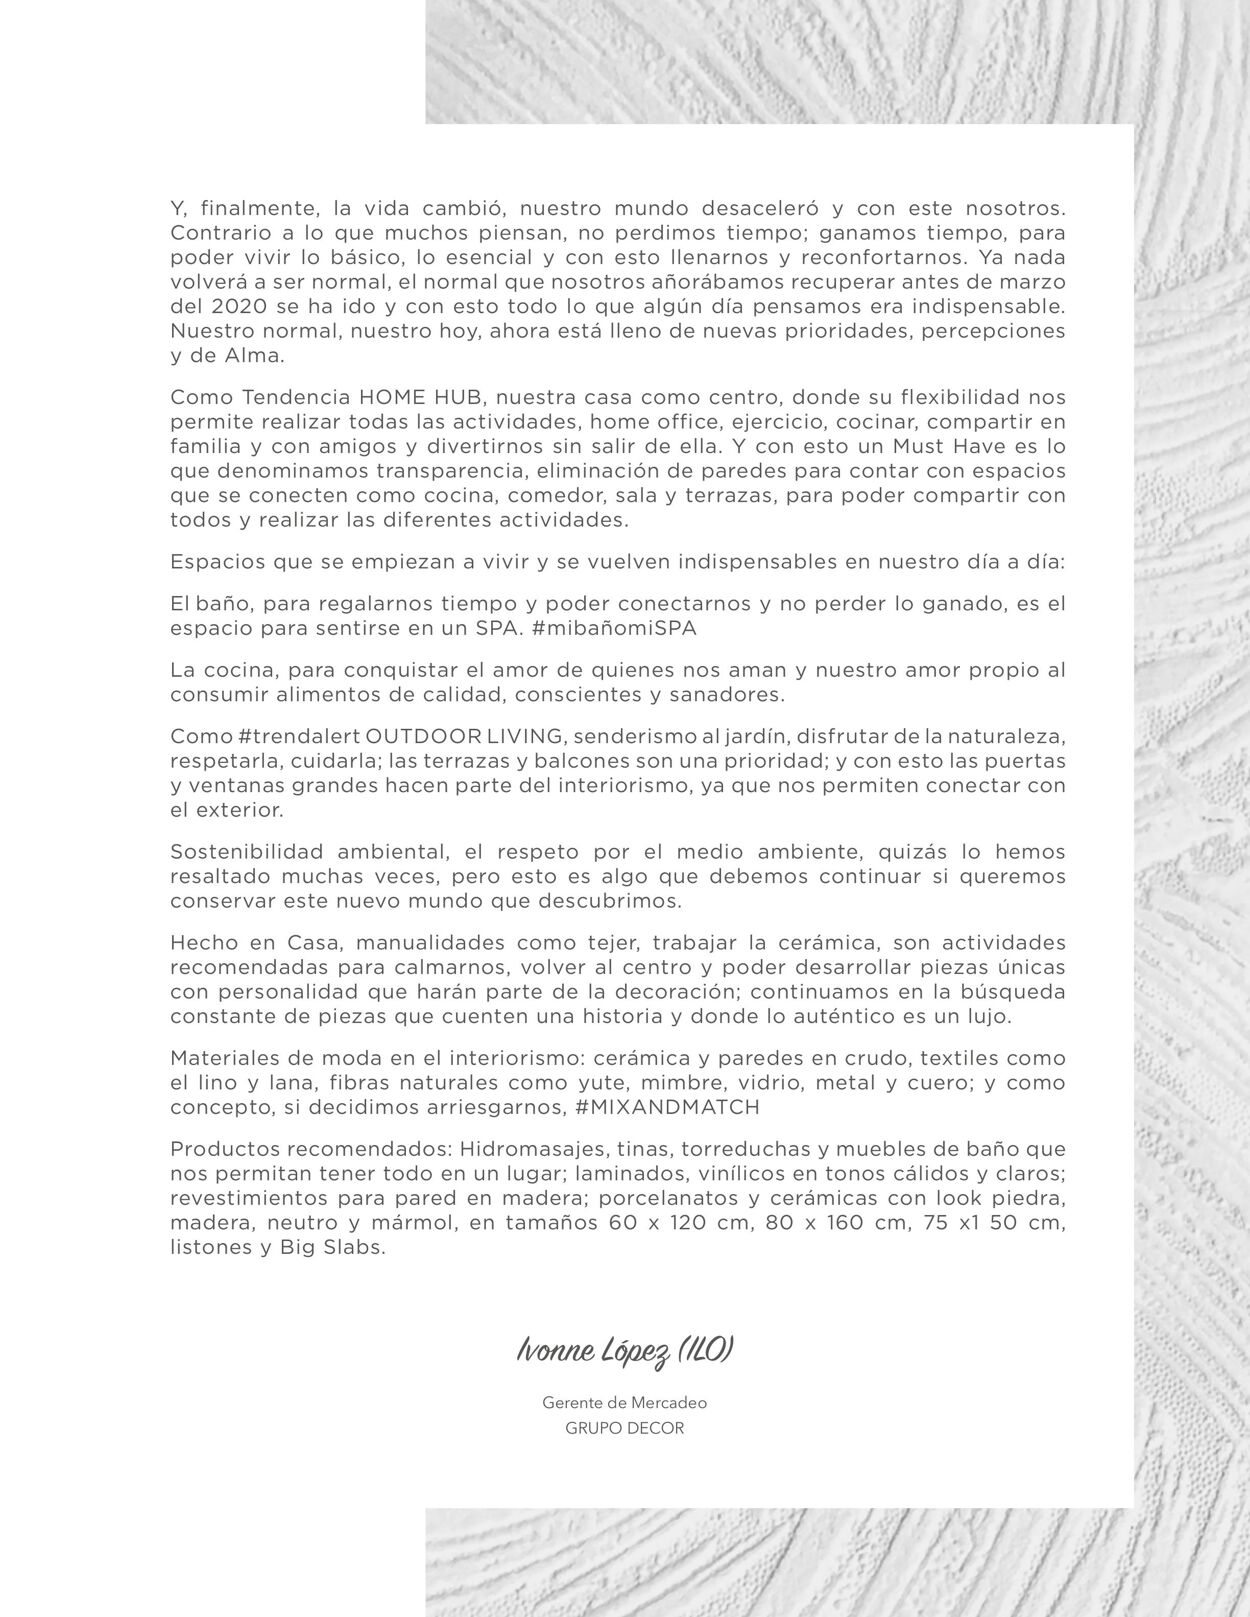 Catálogo Decorcerámica 01.01.2022 - 31.07.2022